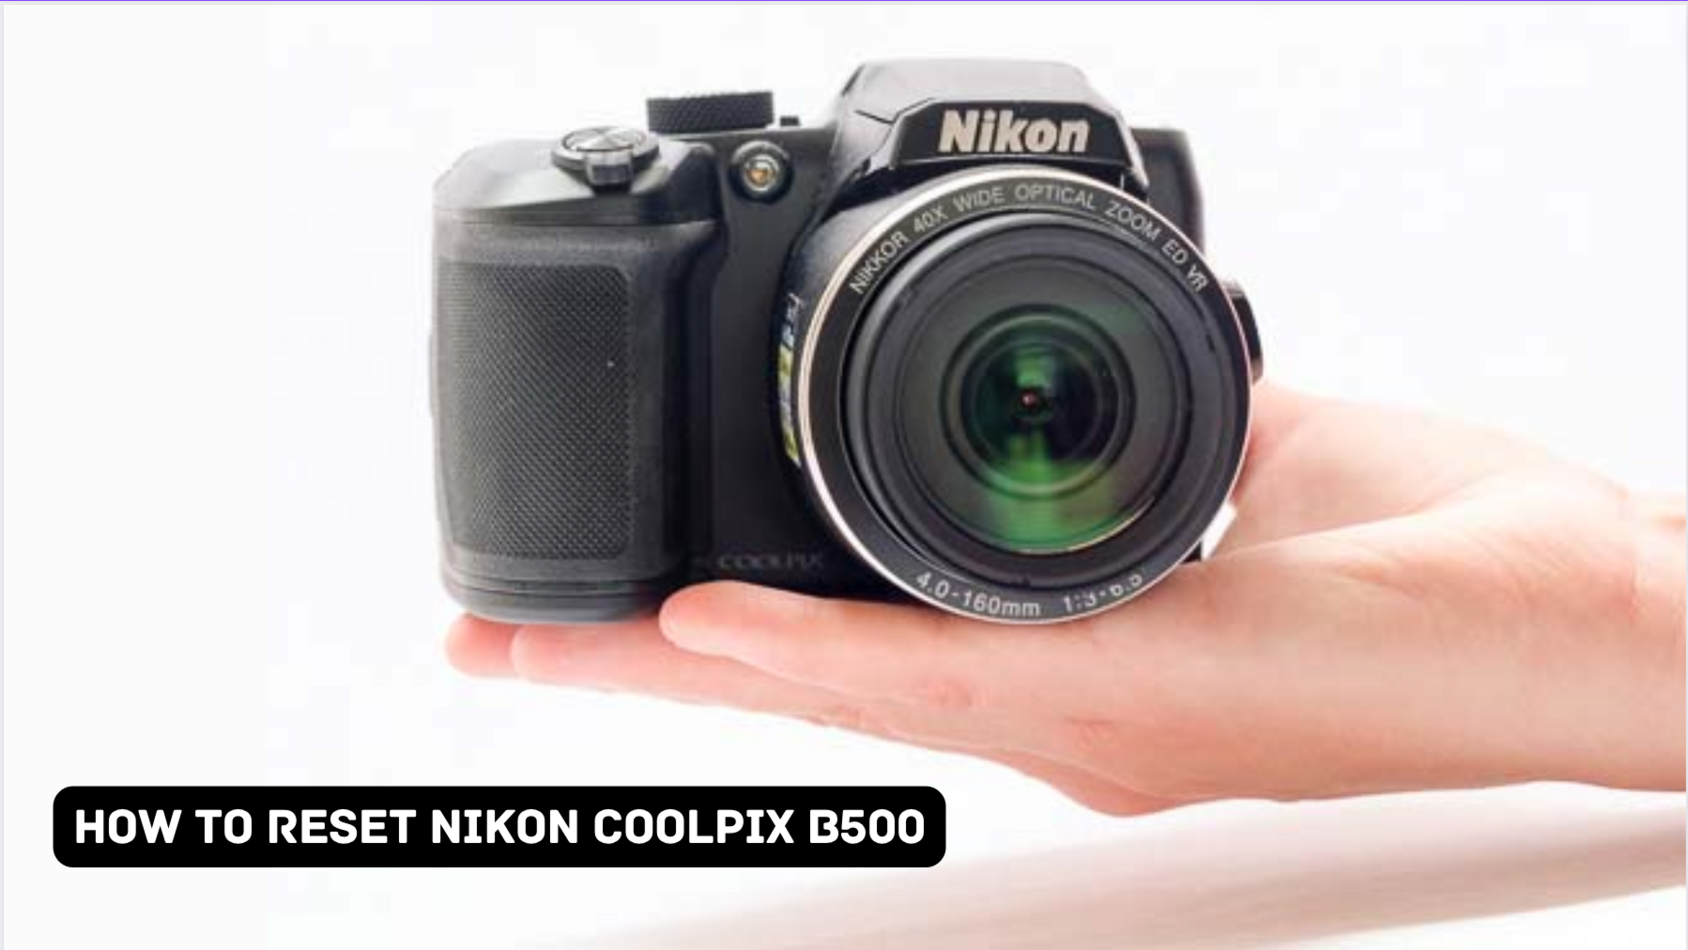 How To Reset Nikon Coolpix B500